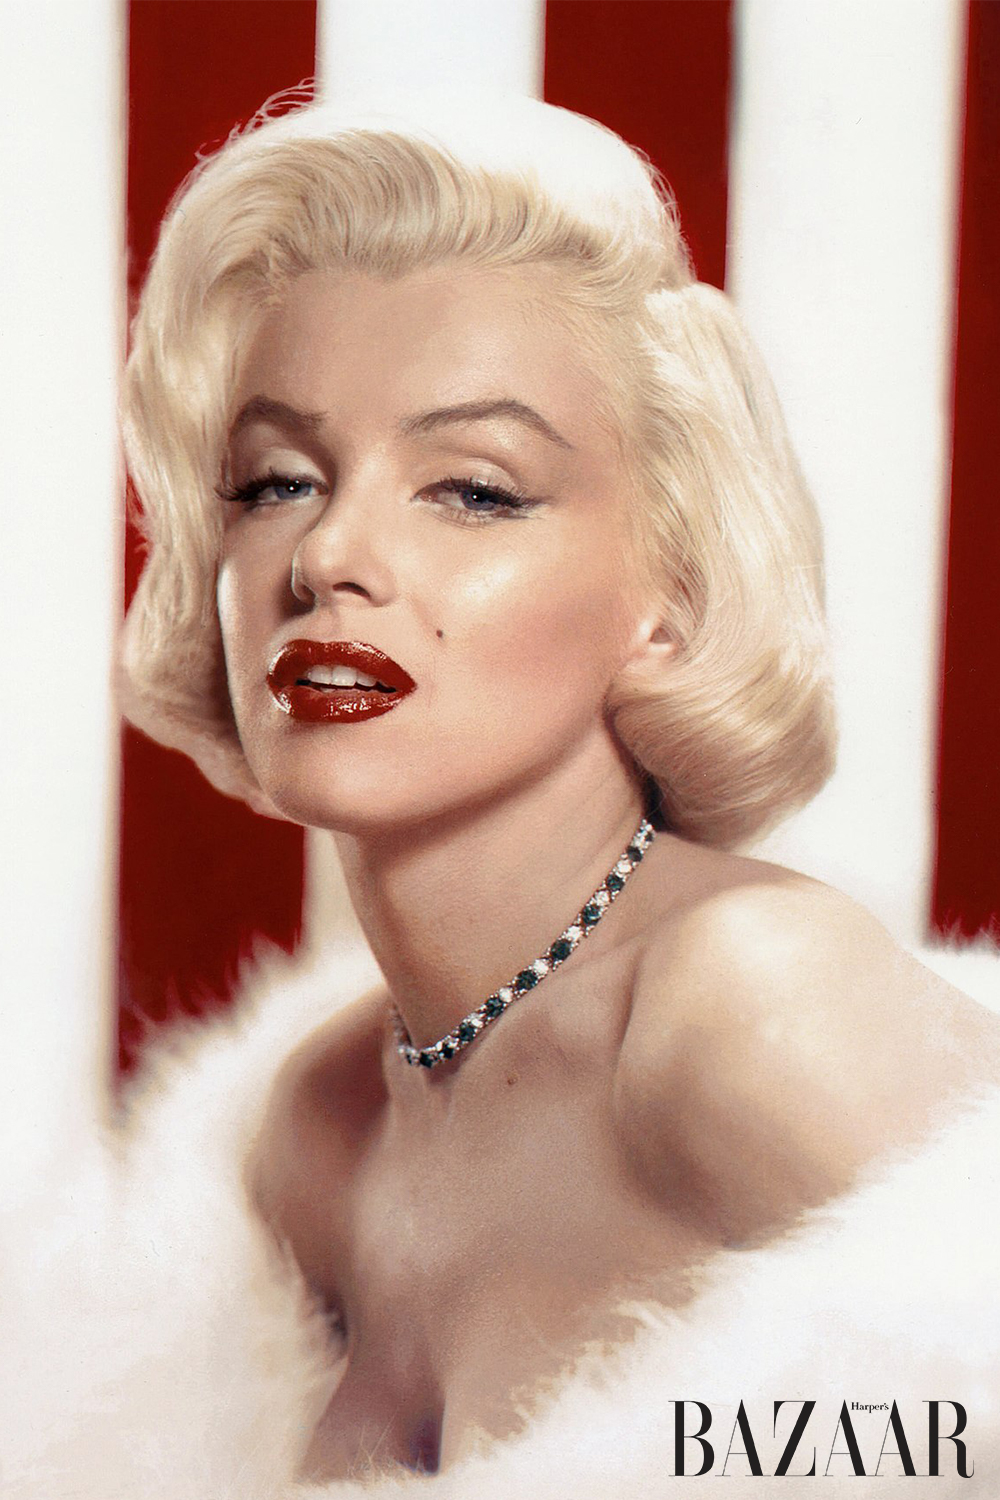 Hướng dẫn cách trang điểm mắt như Marilyn Monroe.